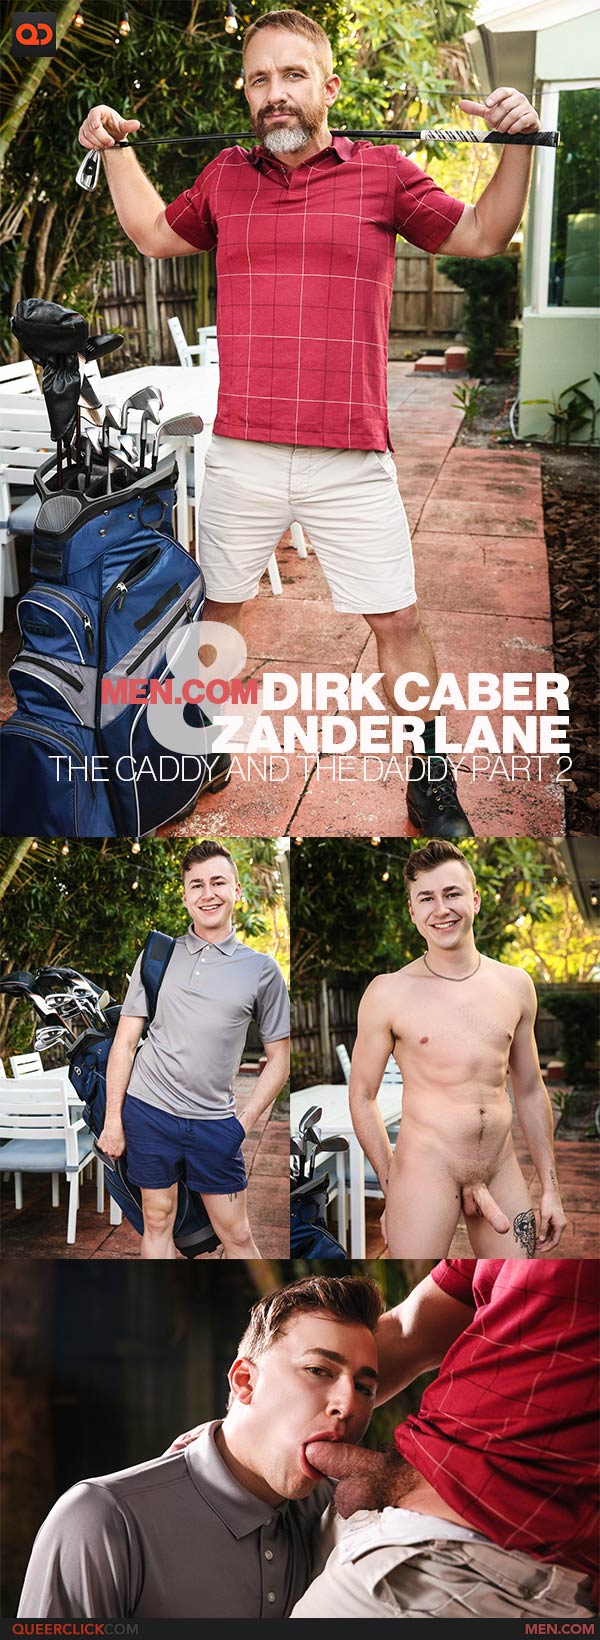 Men.com: Zander Lane and Dirk Caber 